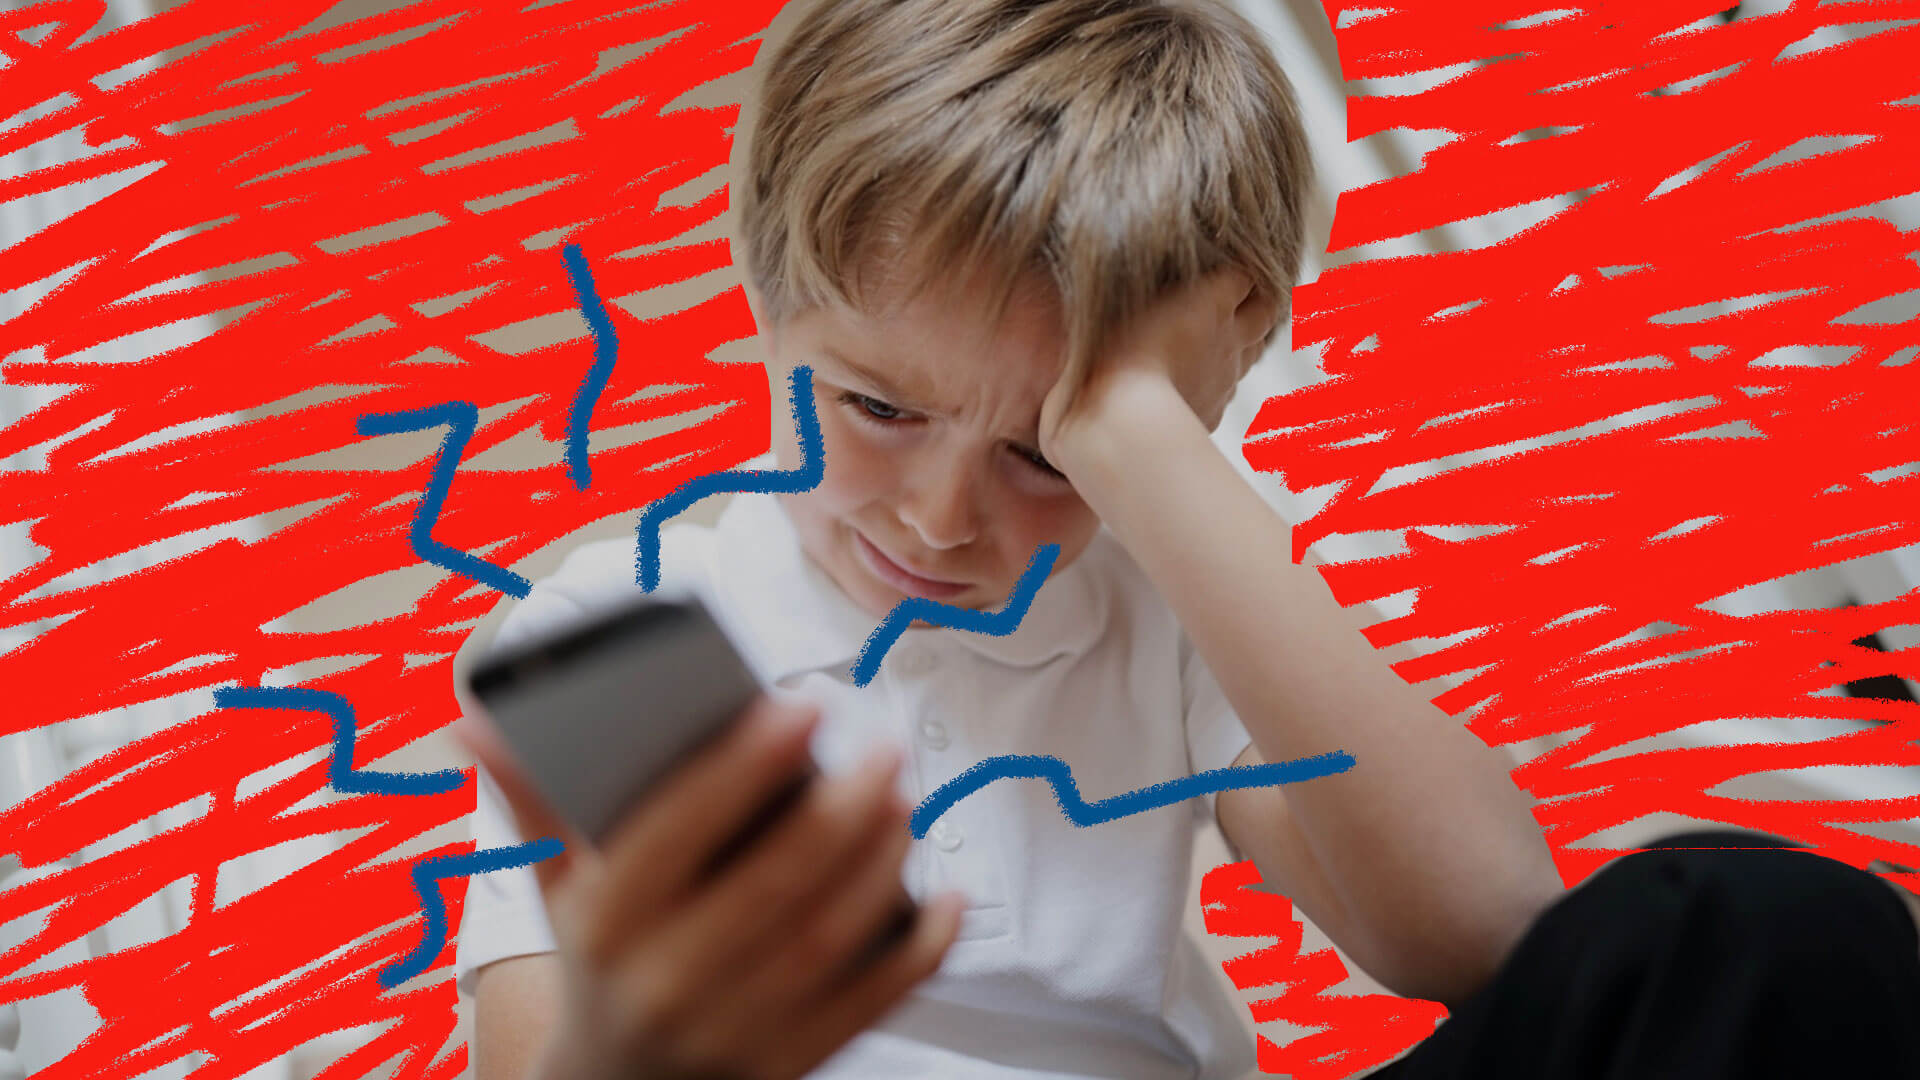 Menino loiro apoia a cabeça na mão, com cara de choro, e olha para um celular.